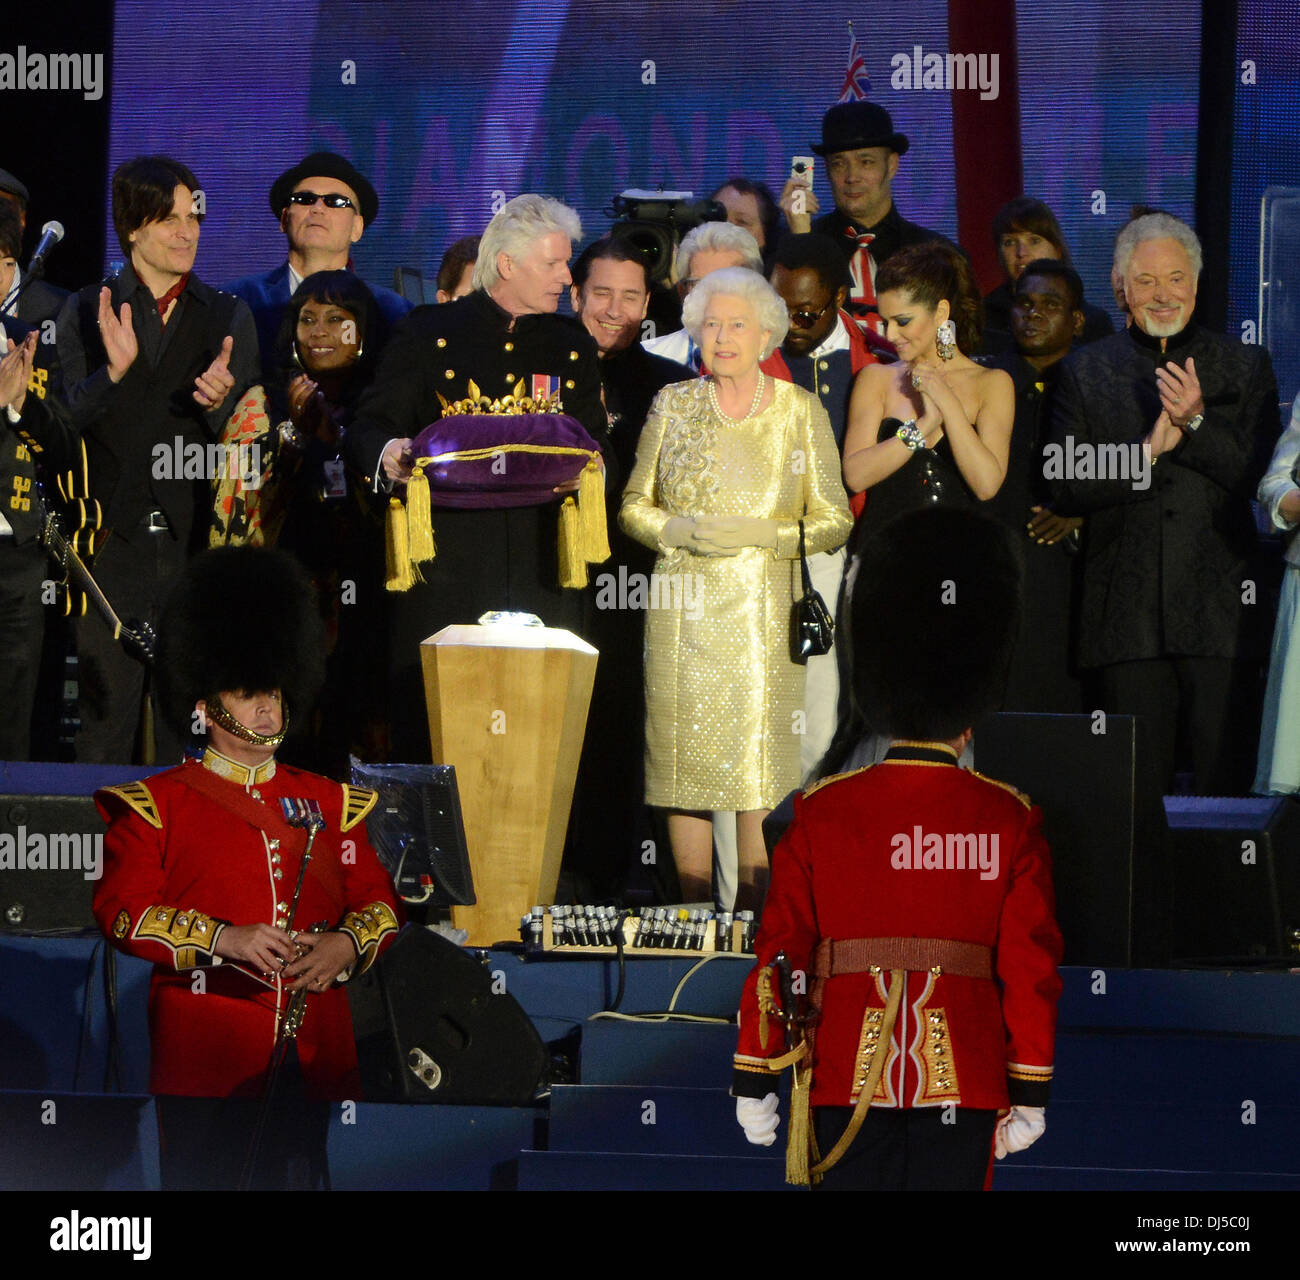 La reine Elizabeth II avec Cheryl Cole, Tom Jones, Will.i.am au Diamond Jubilee Concert au Palais de Buckingham. Londres, Angleterre- 04.06.12 Banque D'Images